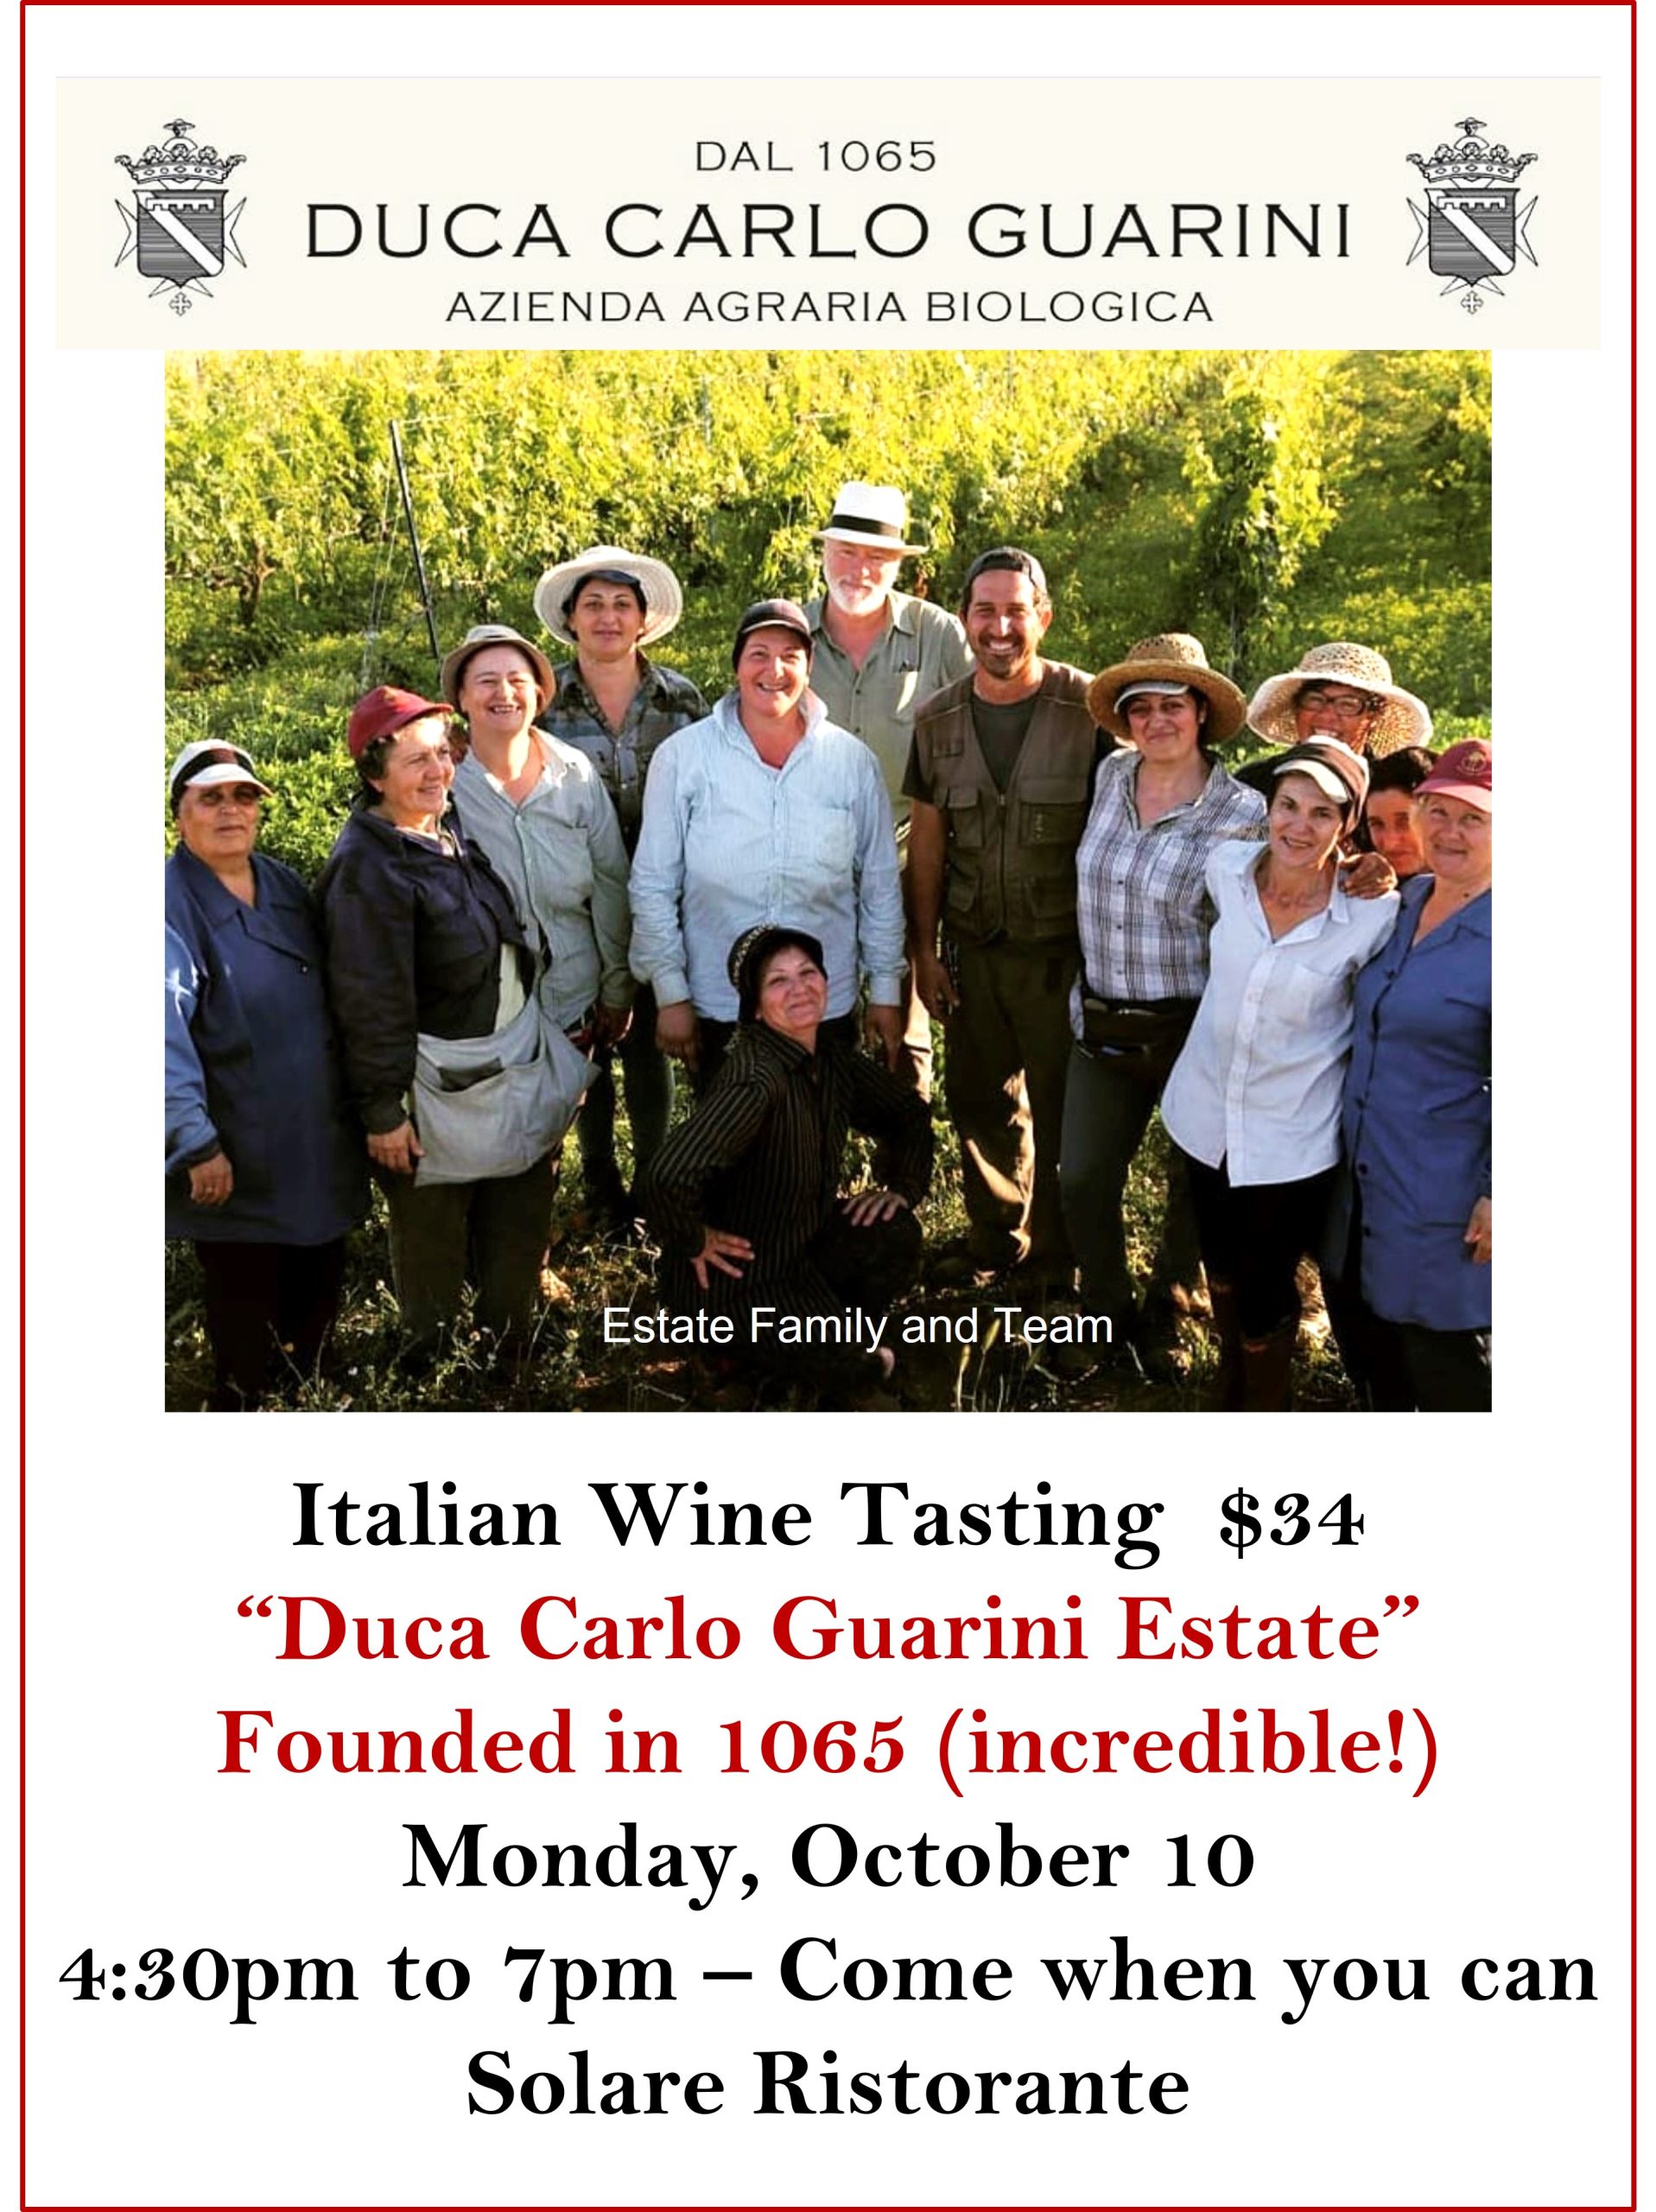 <a id="Solare-DucaCarloGuarini-Wine-Event"></a>Italian Wine Tasting with Duca Carlo Guarini Estate